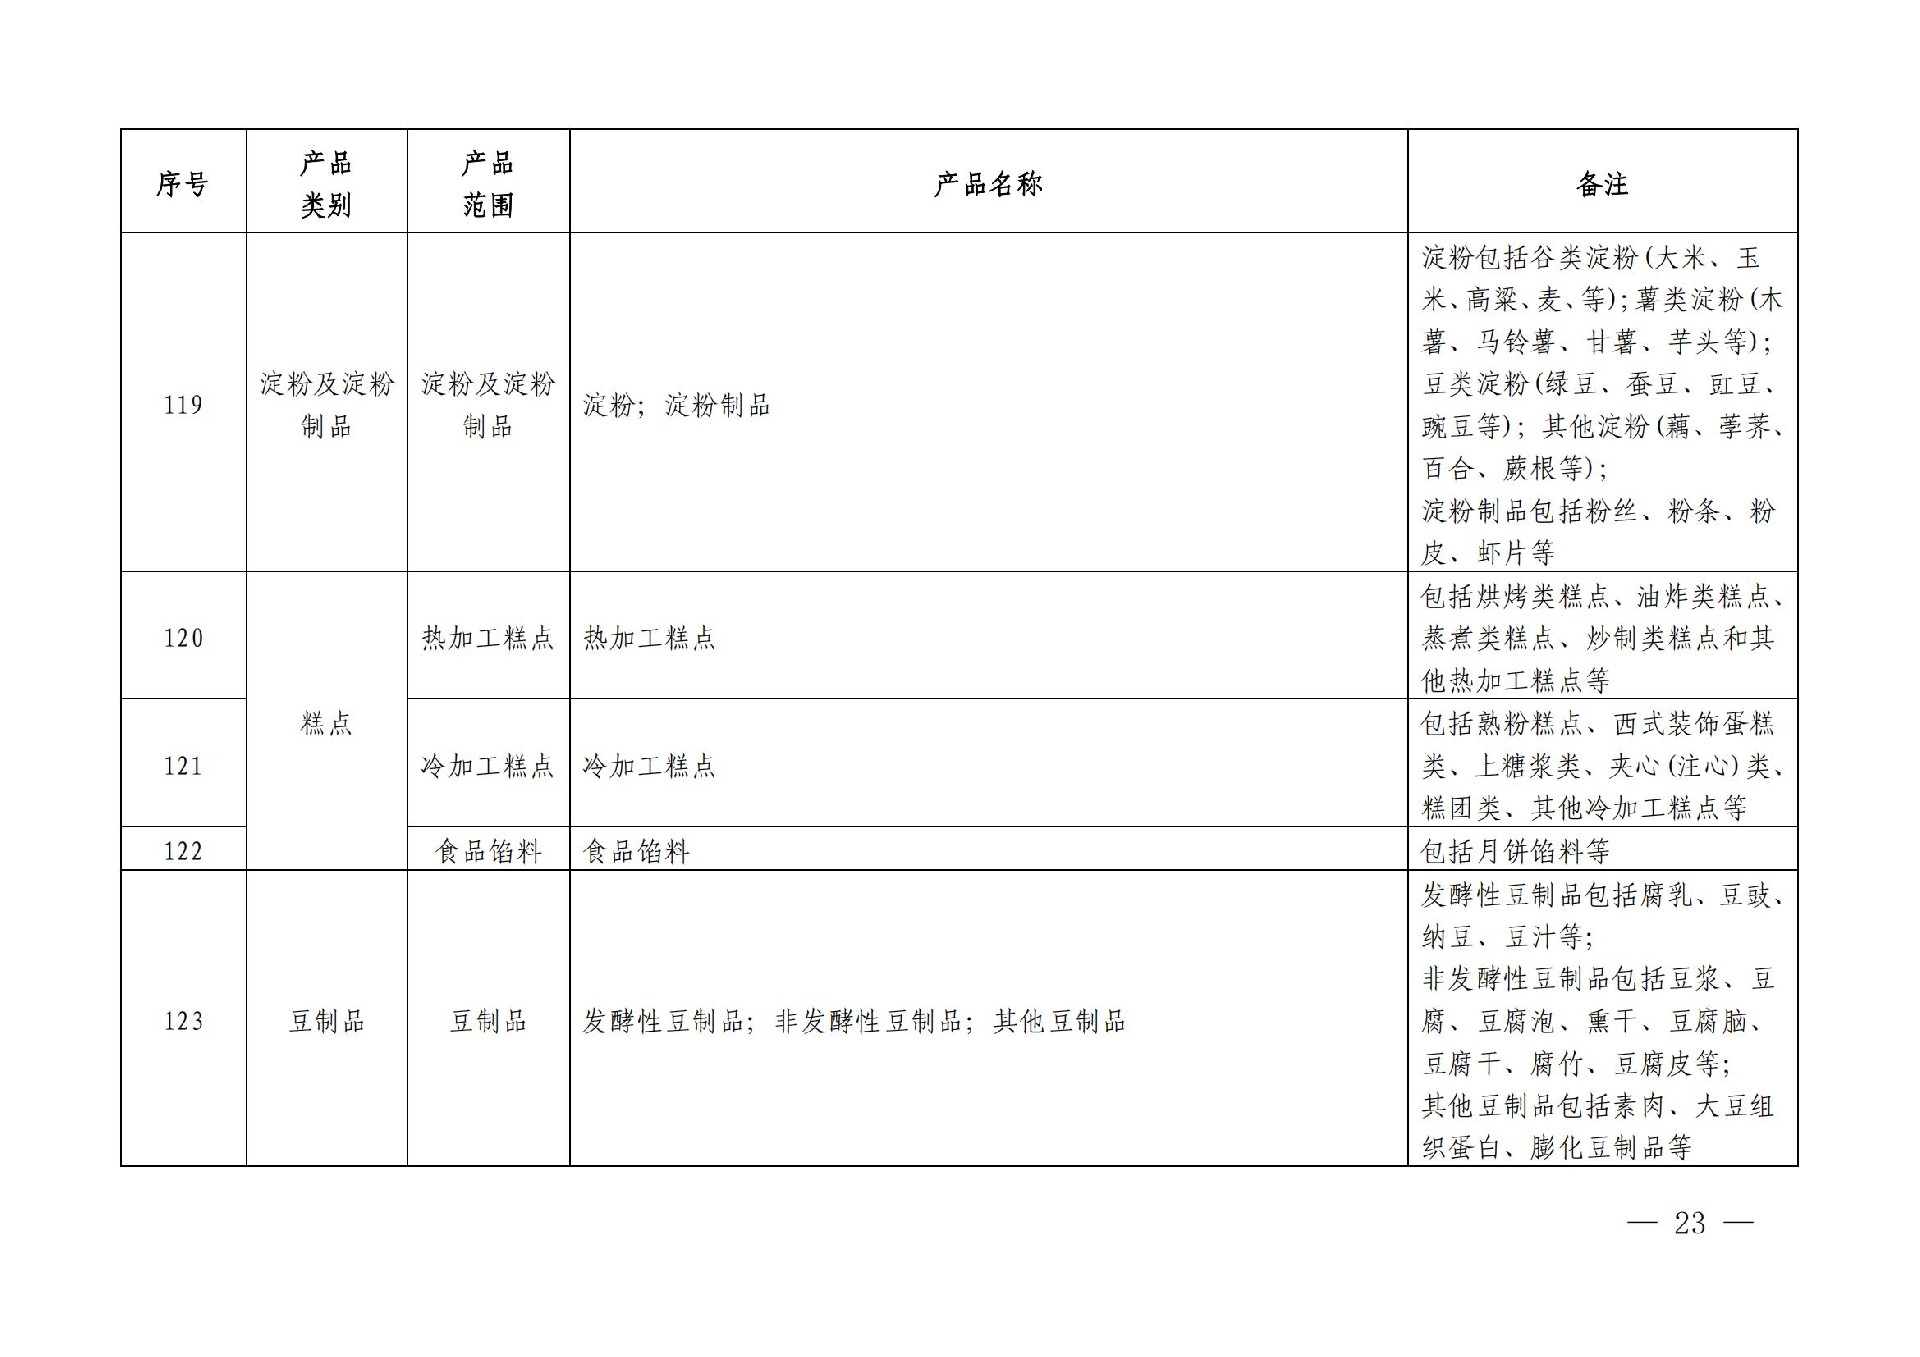 有机产品认证目录【认监委2019年第22号公告】(1)_22.jpg